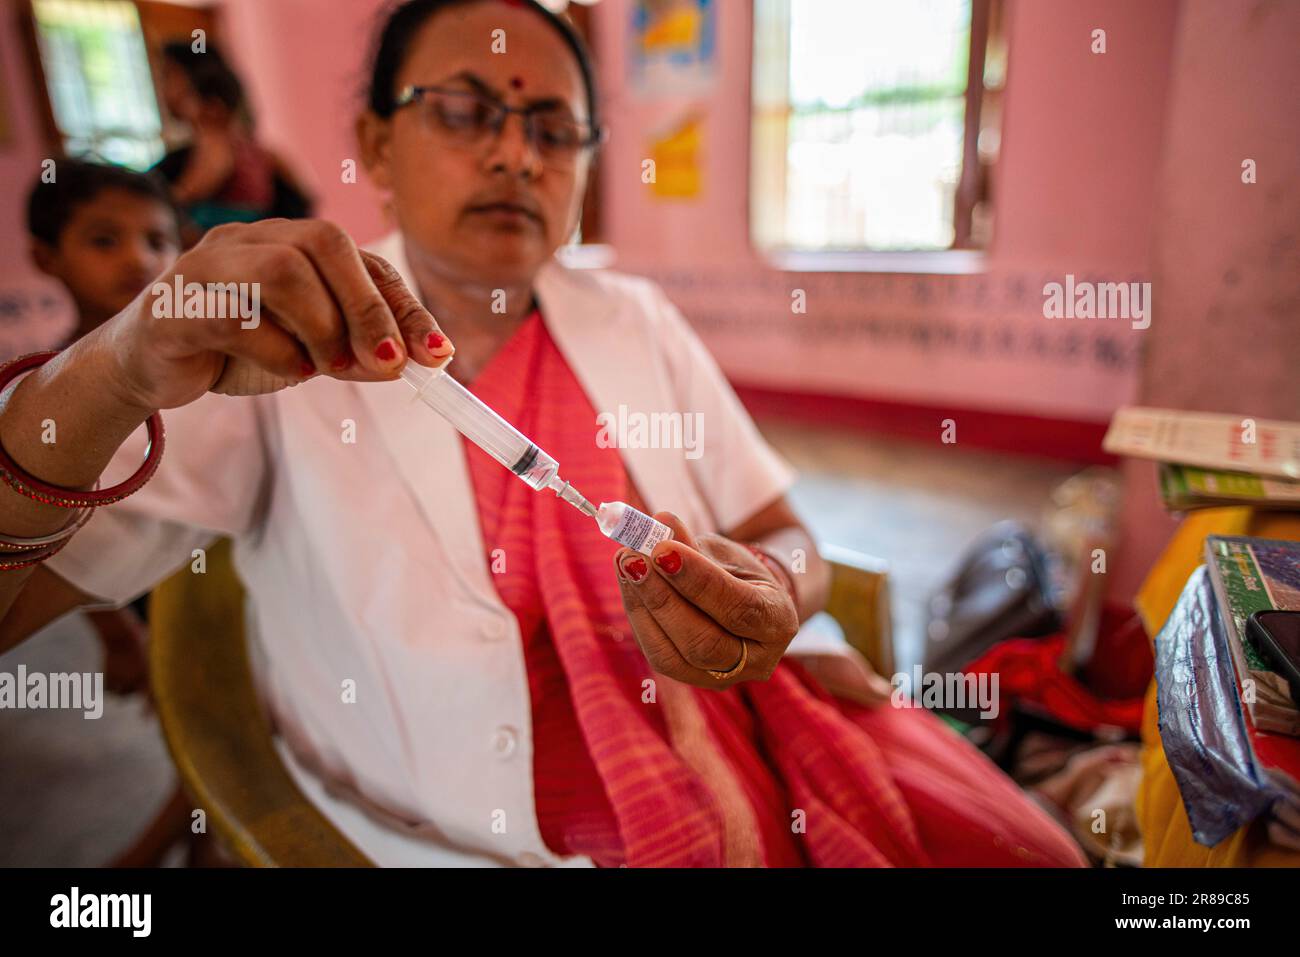 Un operatore sanitario prepara un vaccino sparato ad Anganwadi (Un tipo di centro rurale di assistenza all'infanzia) durante un campo di vaccinazione mensile nel villaggio di Brindaban, Gopalganj. Campo mensile di immunizzazione infantile nell'ambito di un programma di sanità pubblica da parte del governo statale di Bihar nell'area rurale dello stato di Bihar. Campo mensile di immunizzazione infantile nell'ambito di un programma di sanità pubblica da parte del governo statale di Bihar nell'area rurale dello stato di Bihar. (Foto di Pradeep Gaur / SOPA Images/Sipa USA) Foto Stock